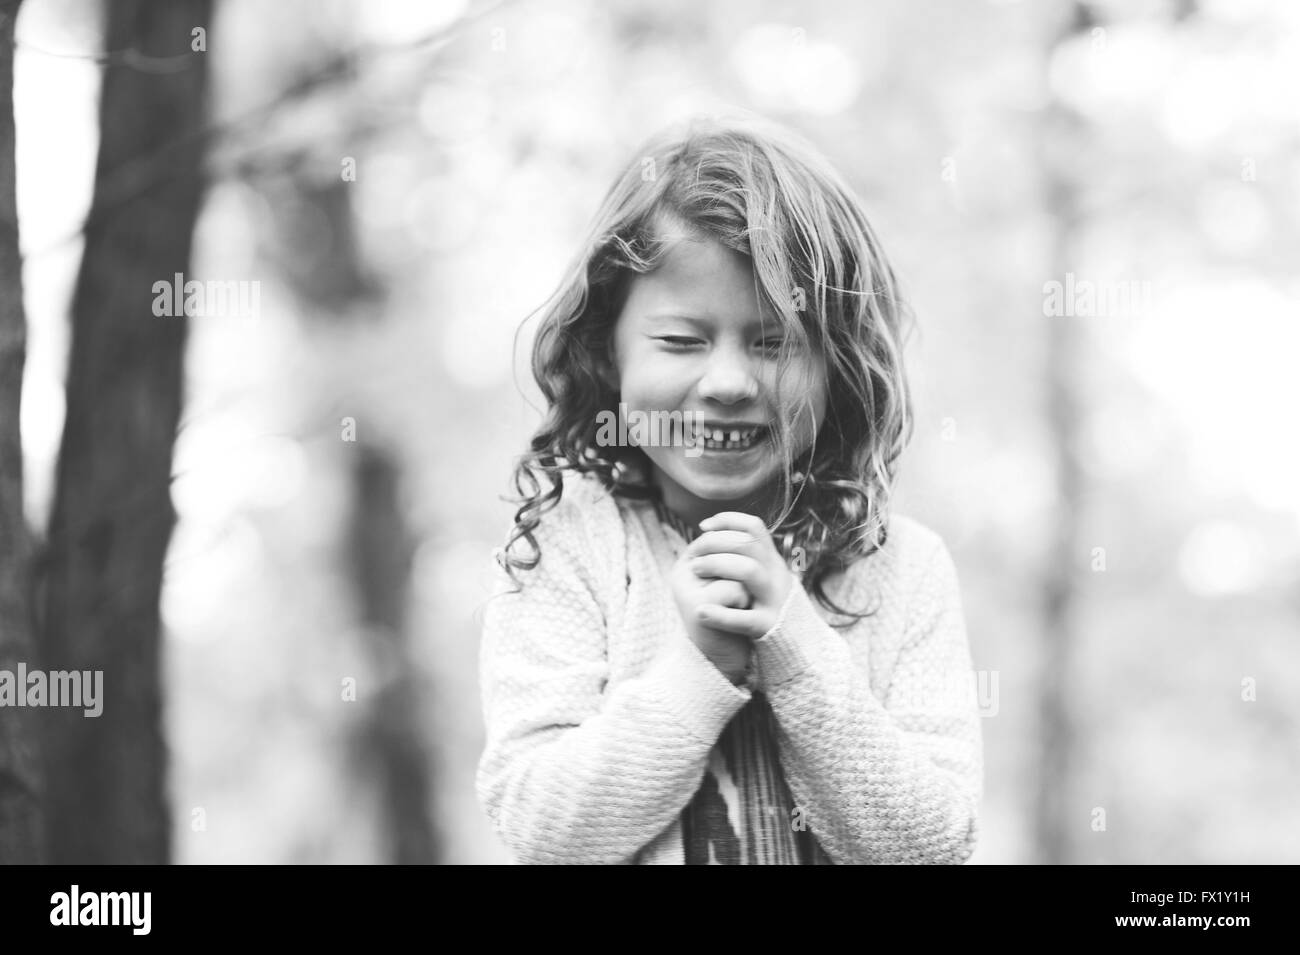 Schwarz / weiß Bild eines Mädchens Lachen mit ihren Augen geschlossen. Stockfoto